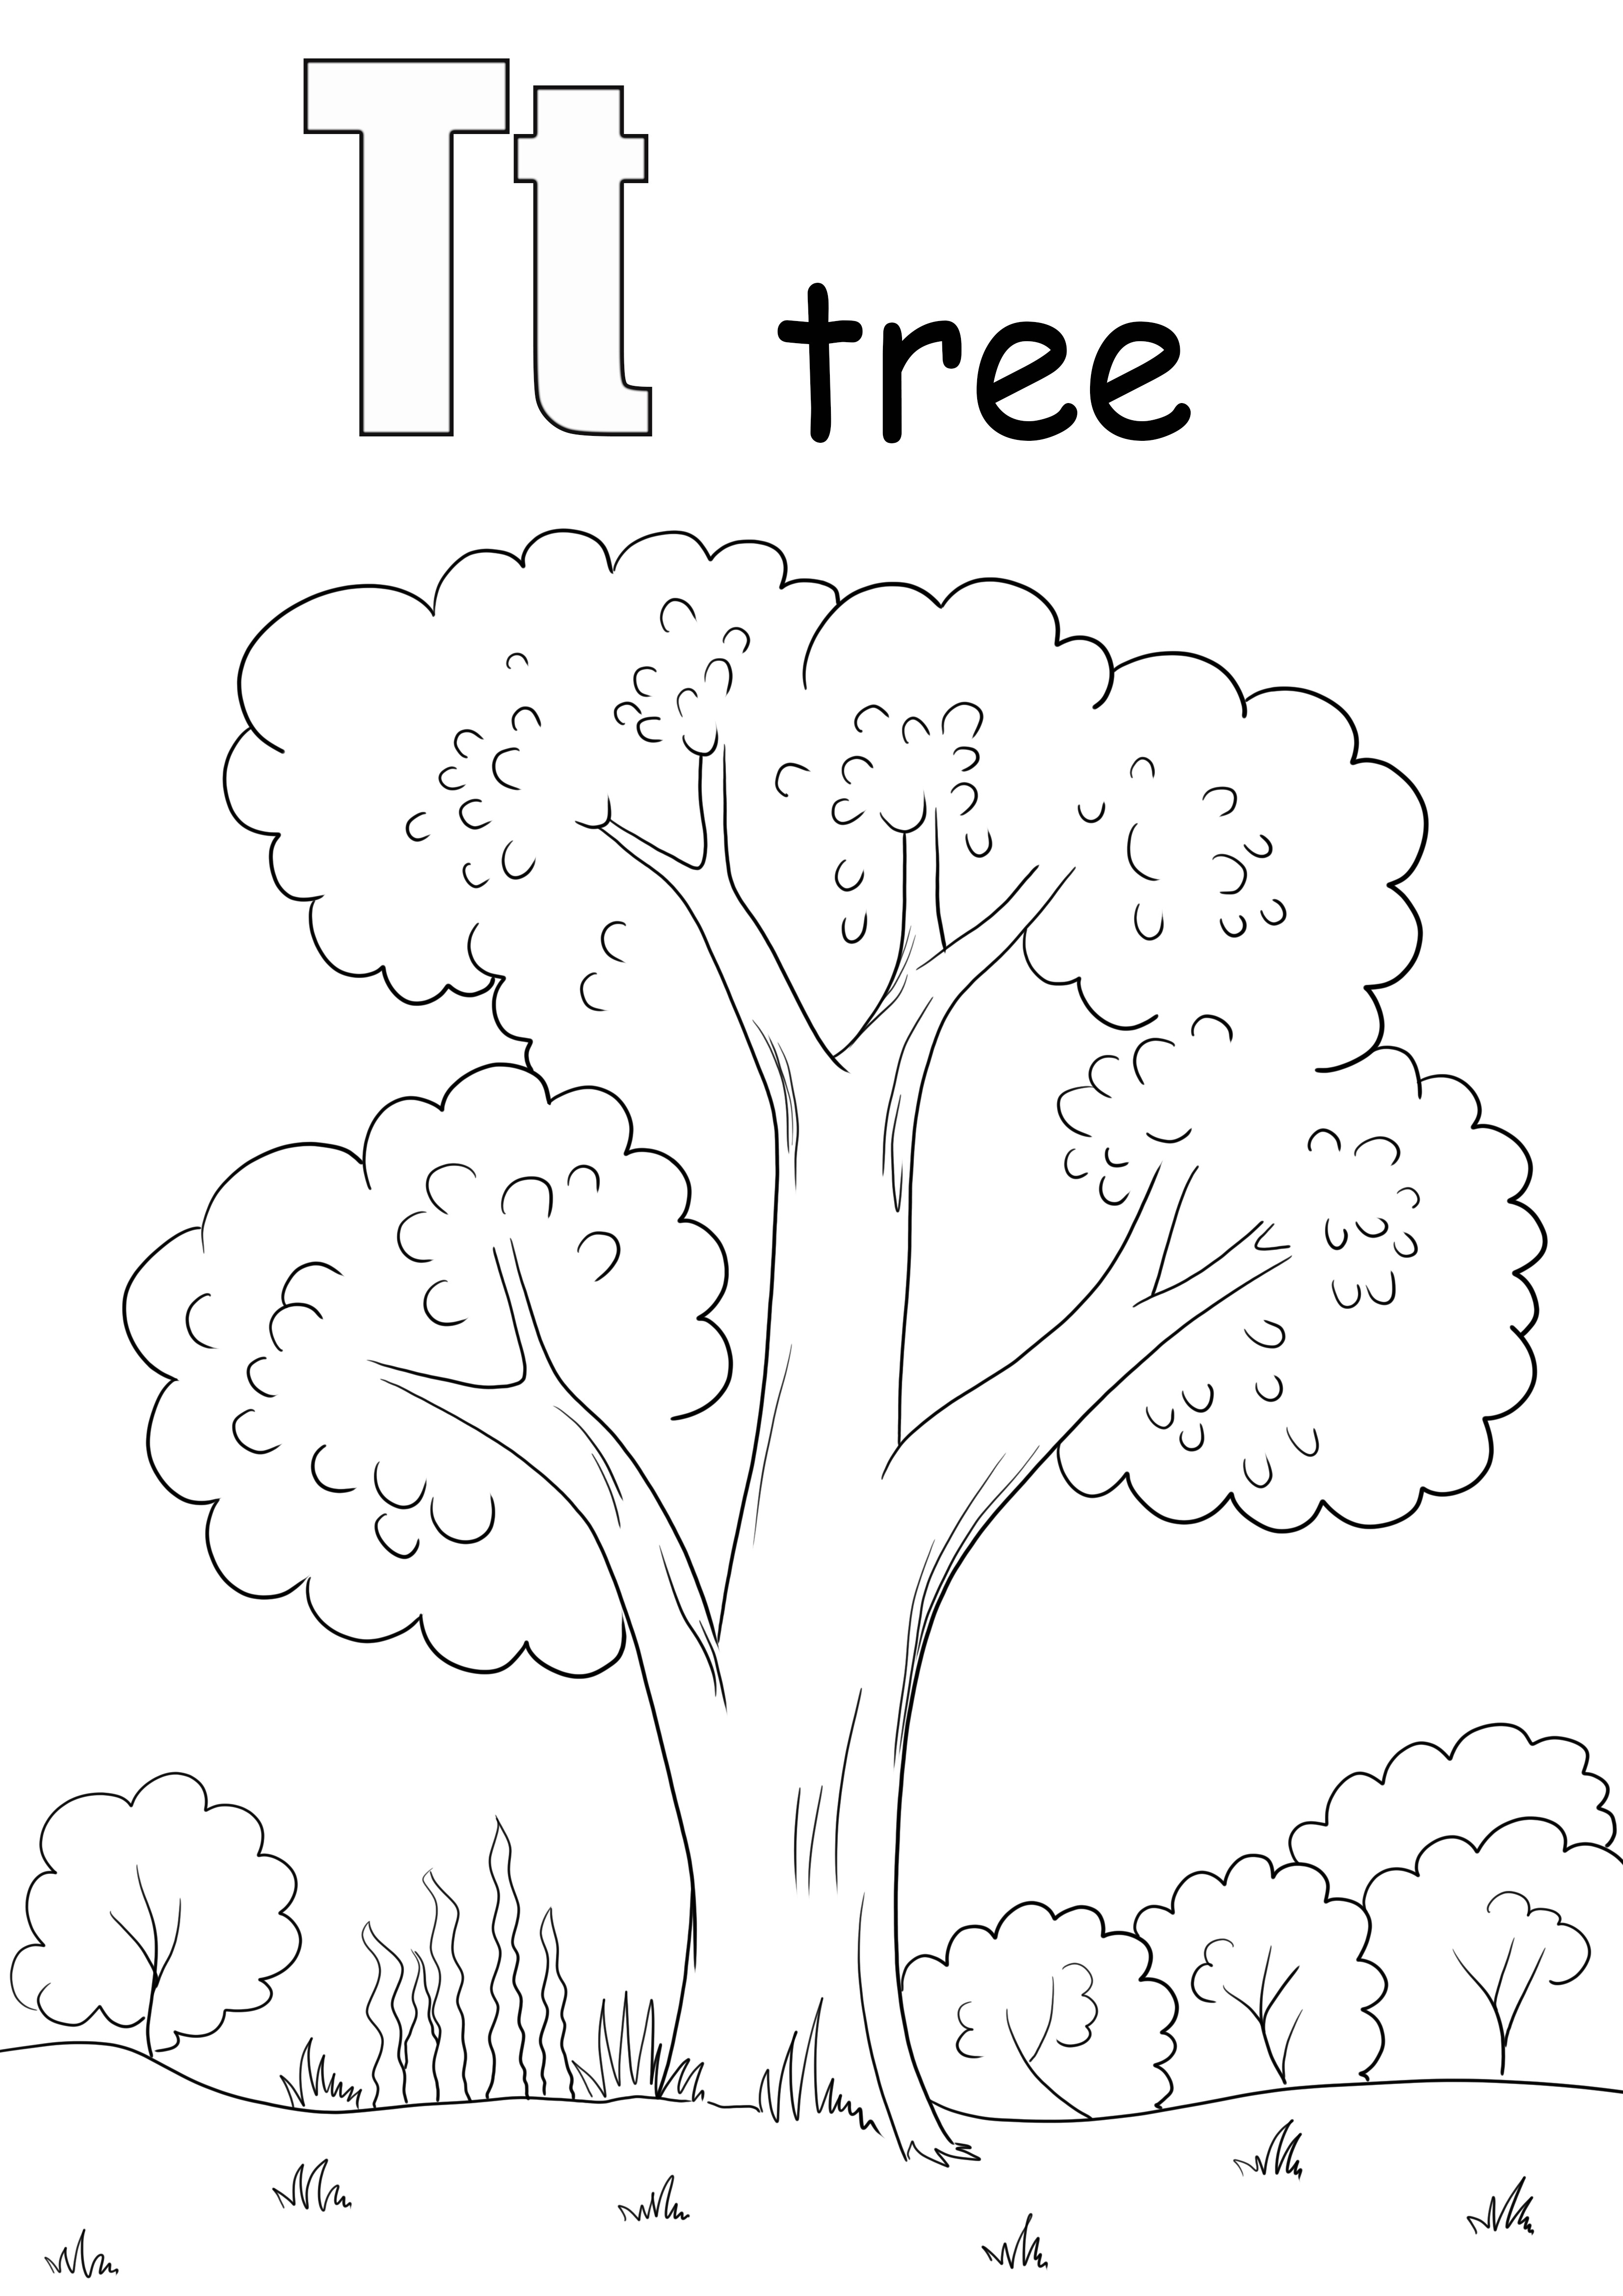 A T fa szószínezésre és ingyenes oldalnyomtatásra szolgál